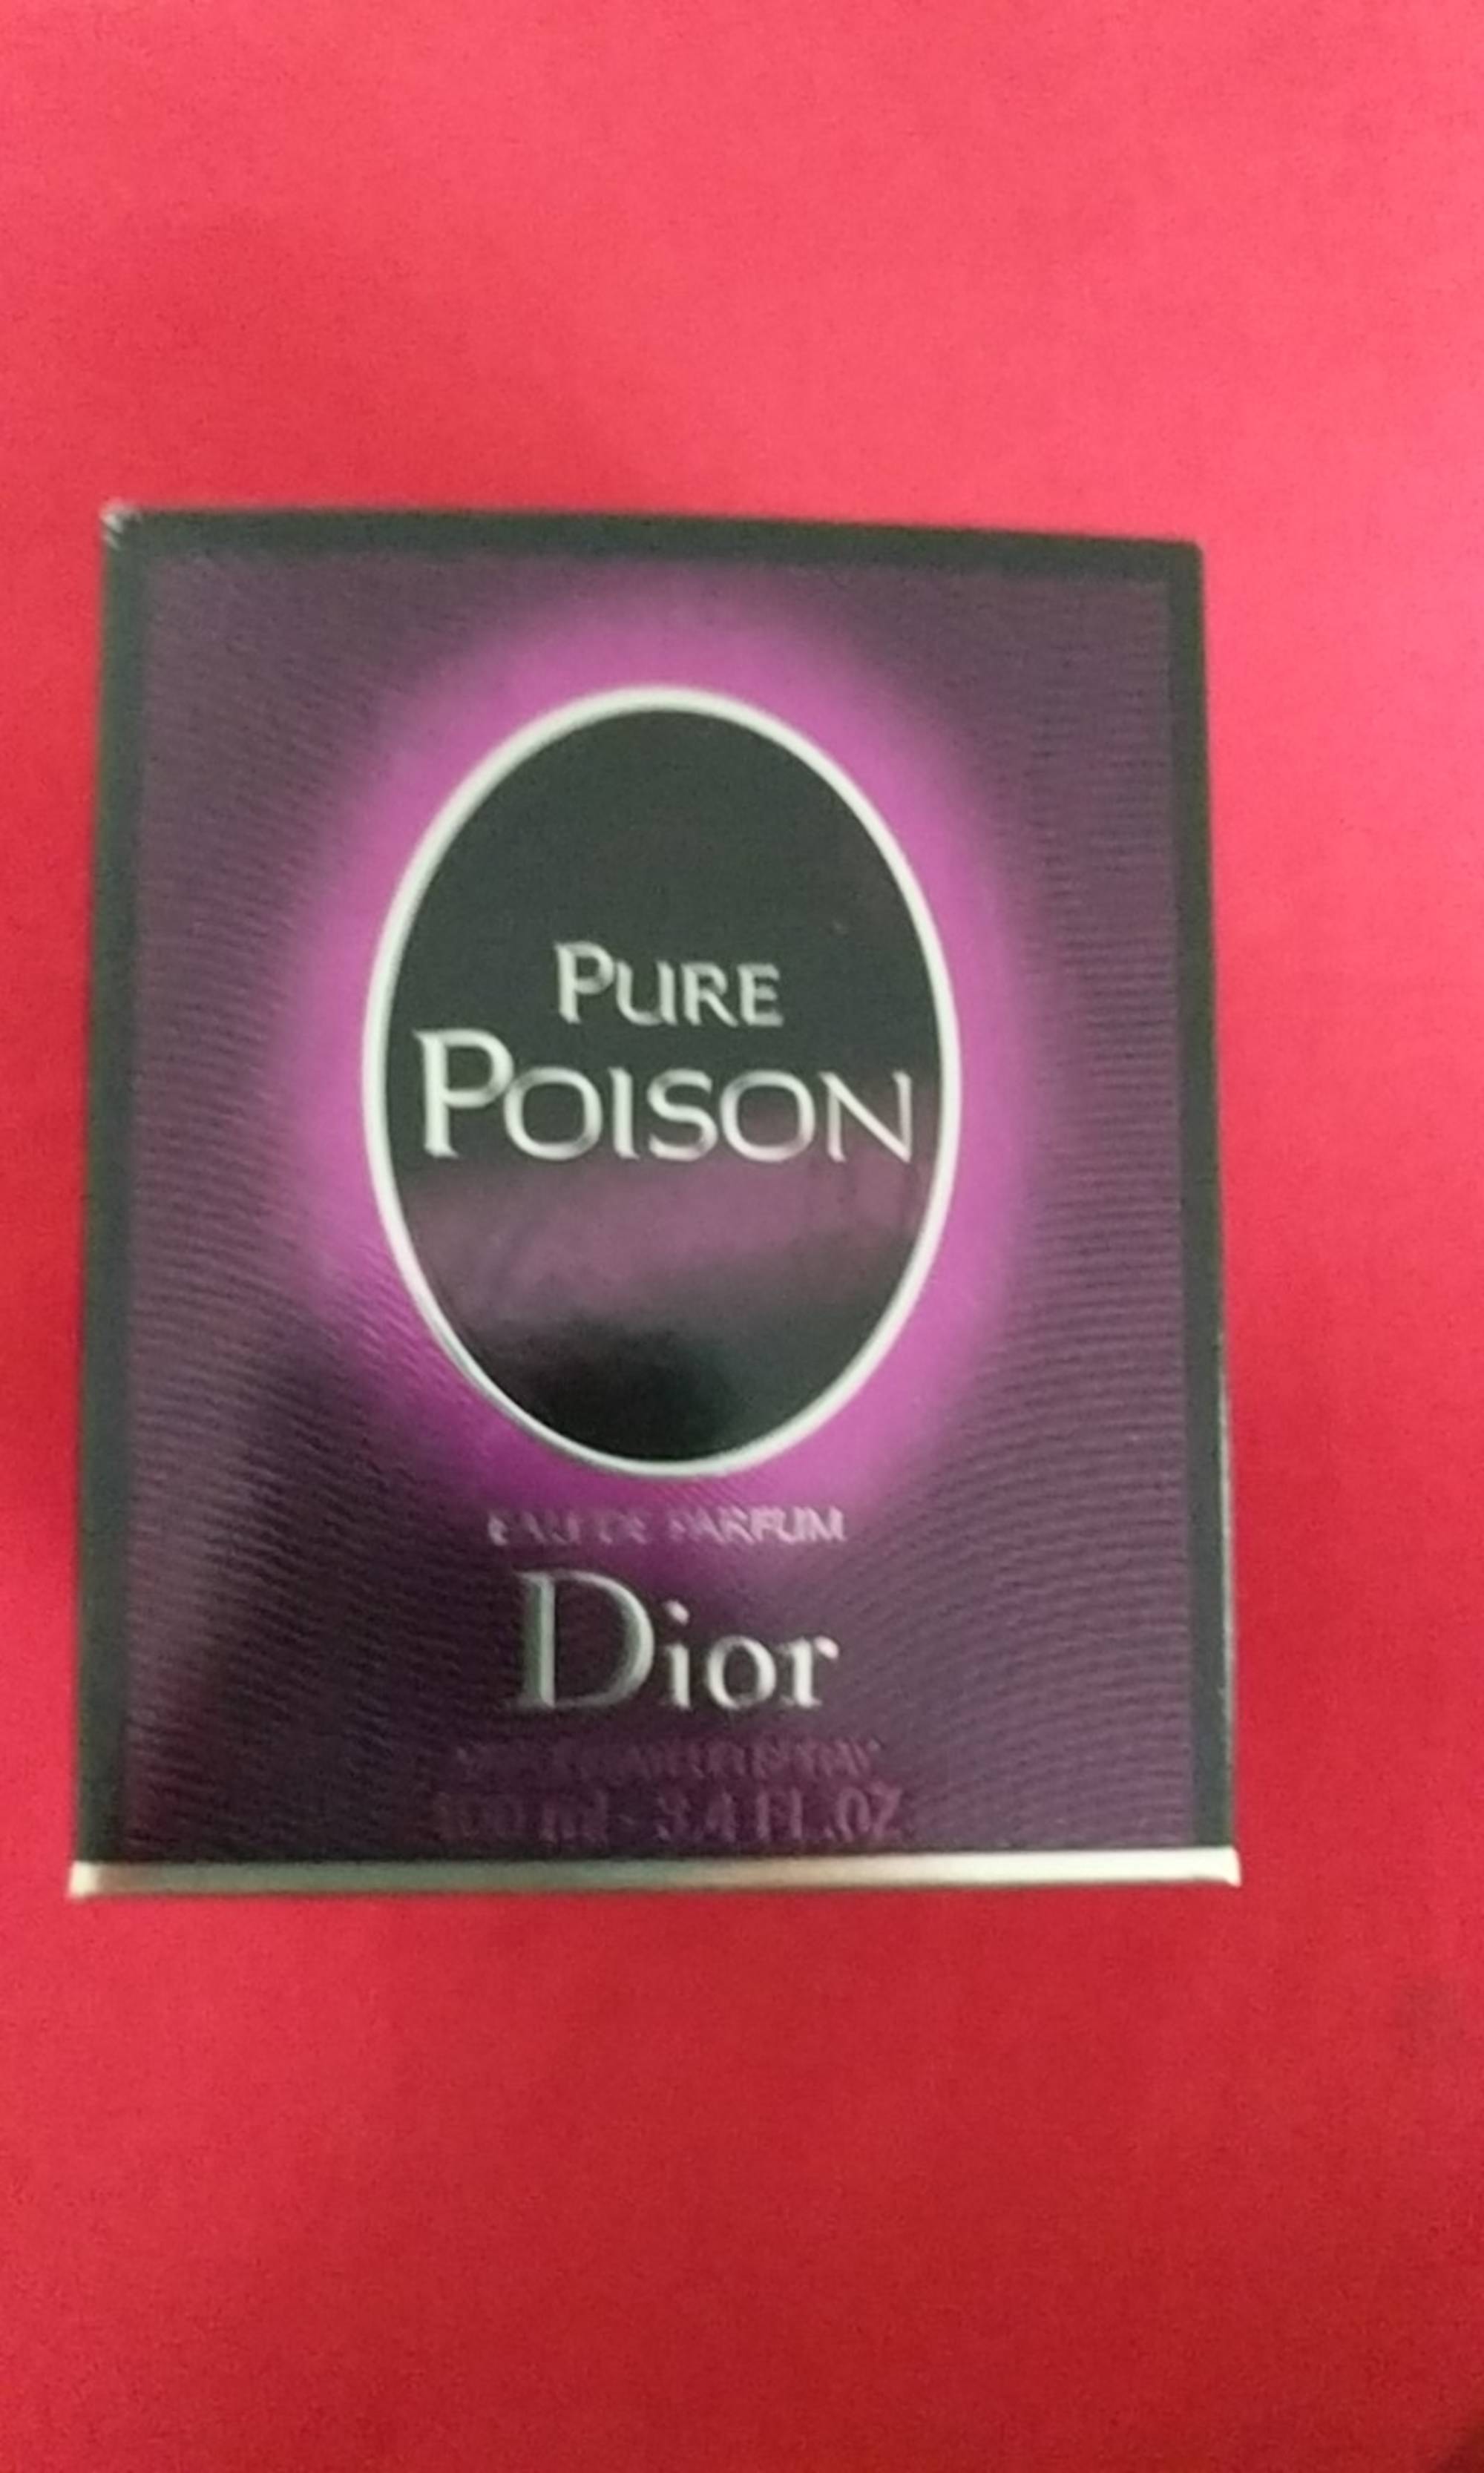 DIOR - Pure Poison - Eau de parfum